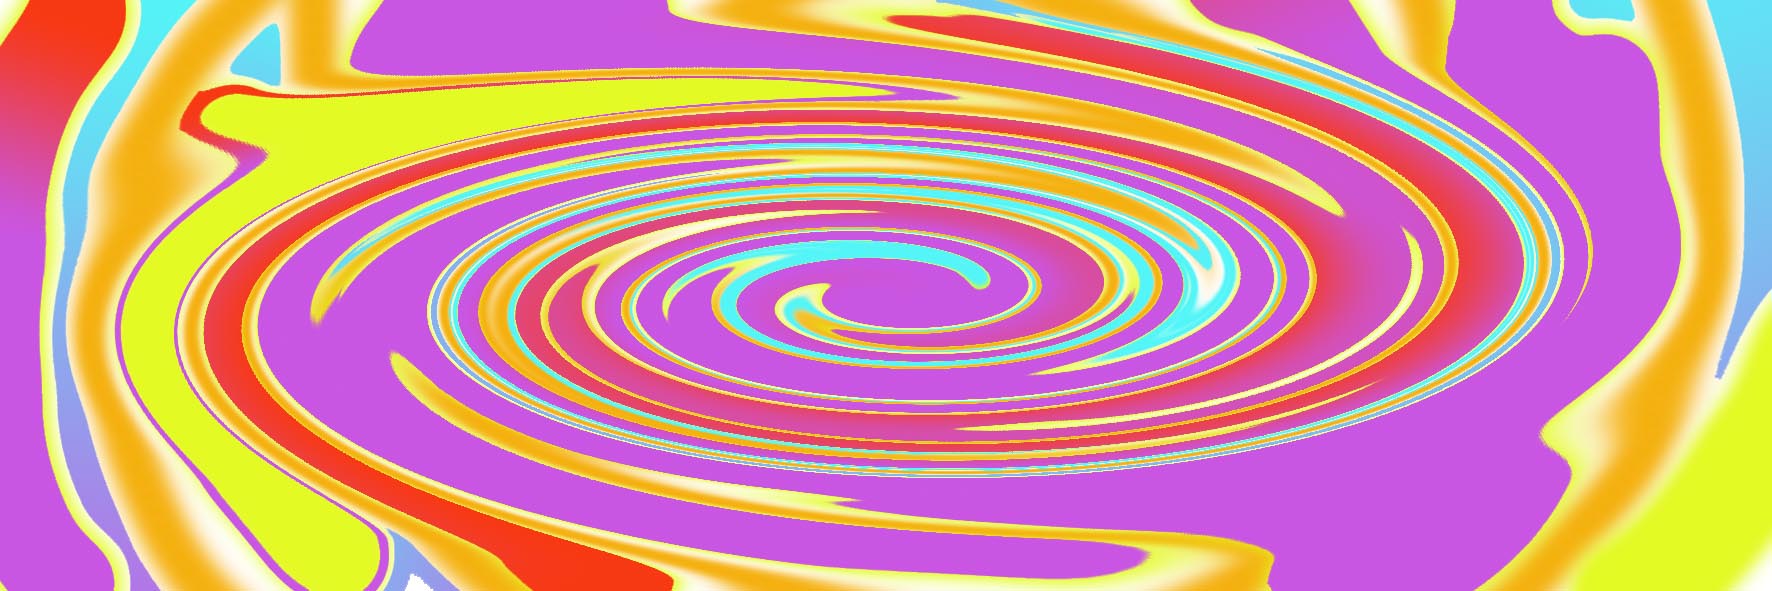 Immagine spiraliforme (Per leggerne la descrizione proseguire nel link). Una spirale di colori sui toni del rosso, del viola e del giallo.